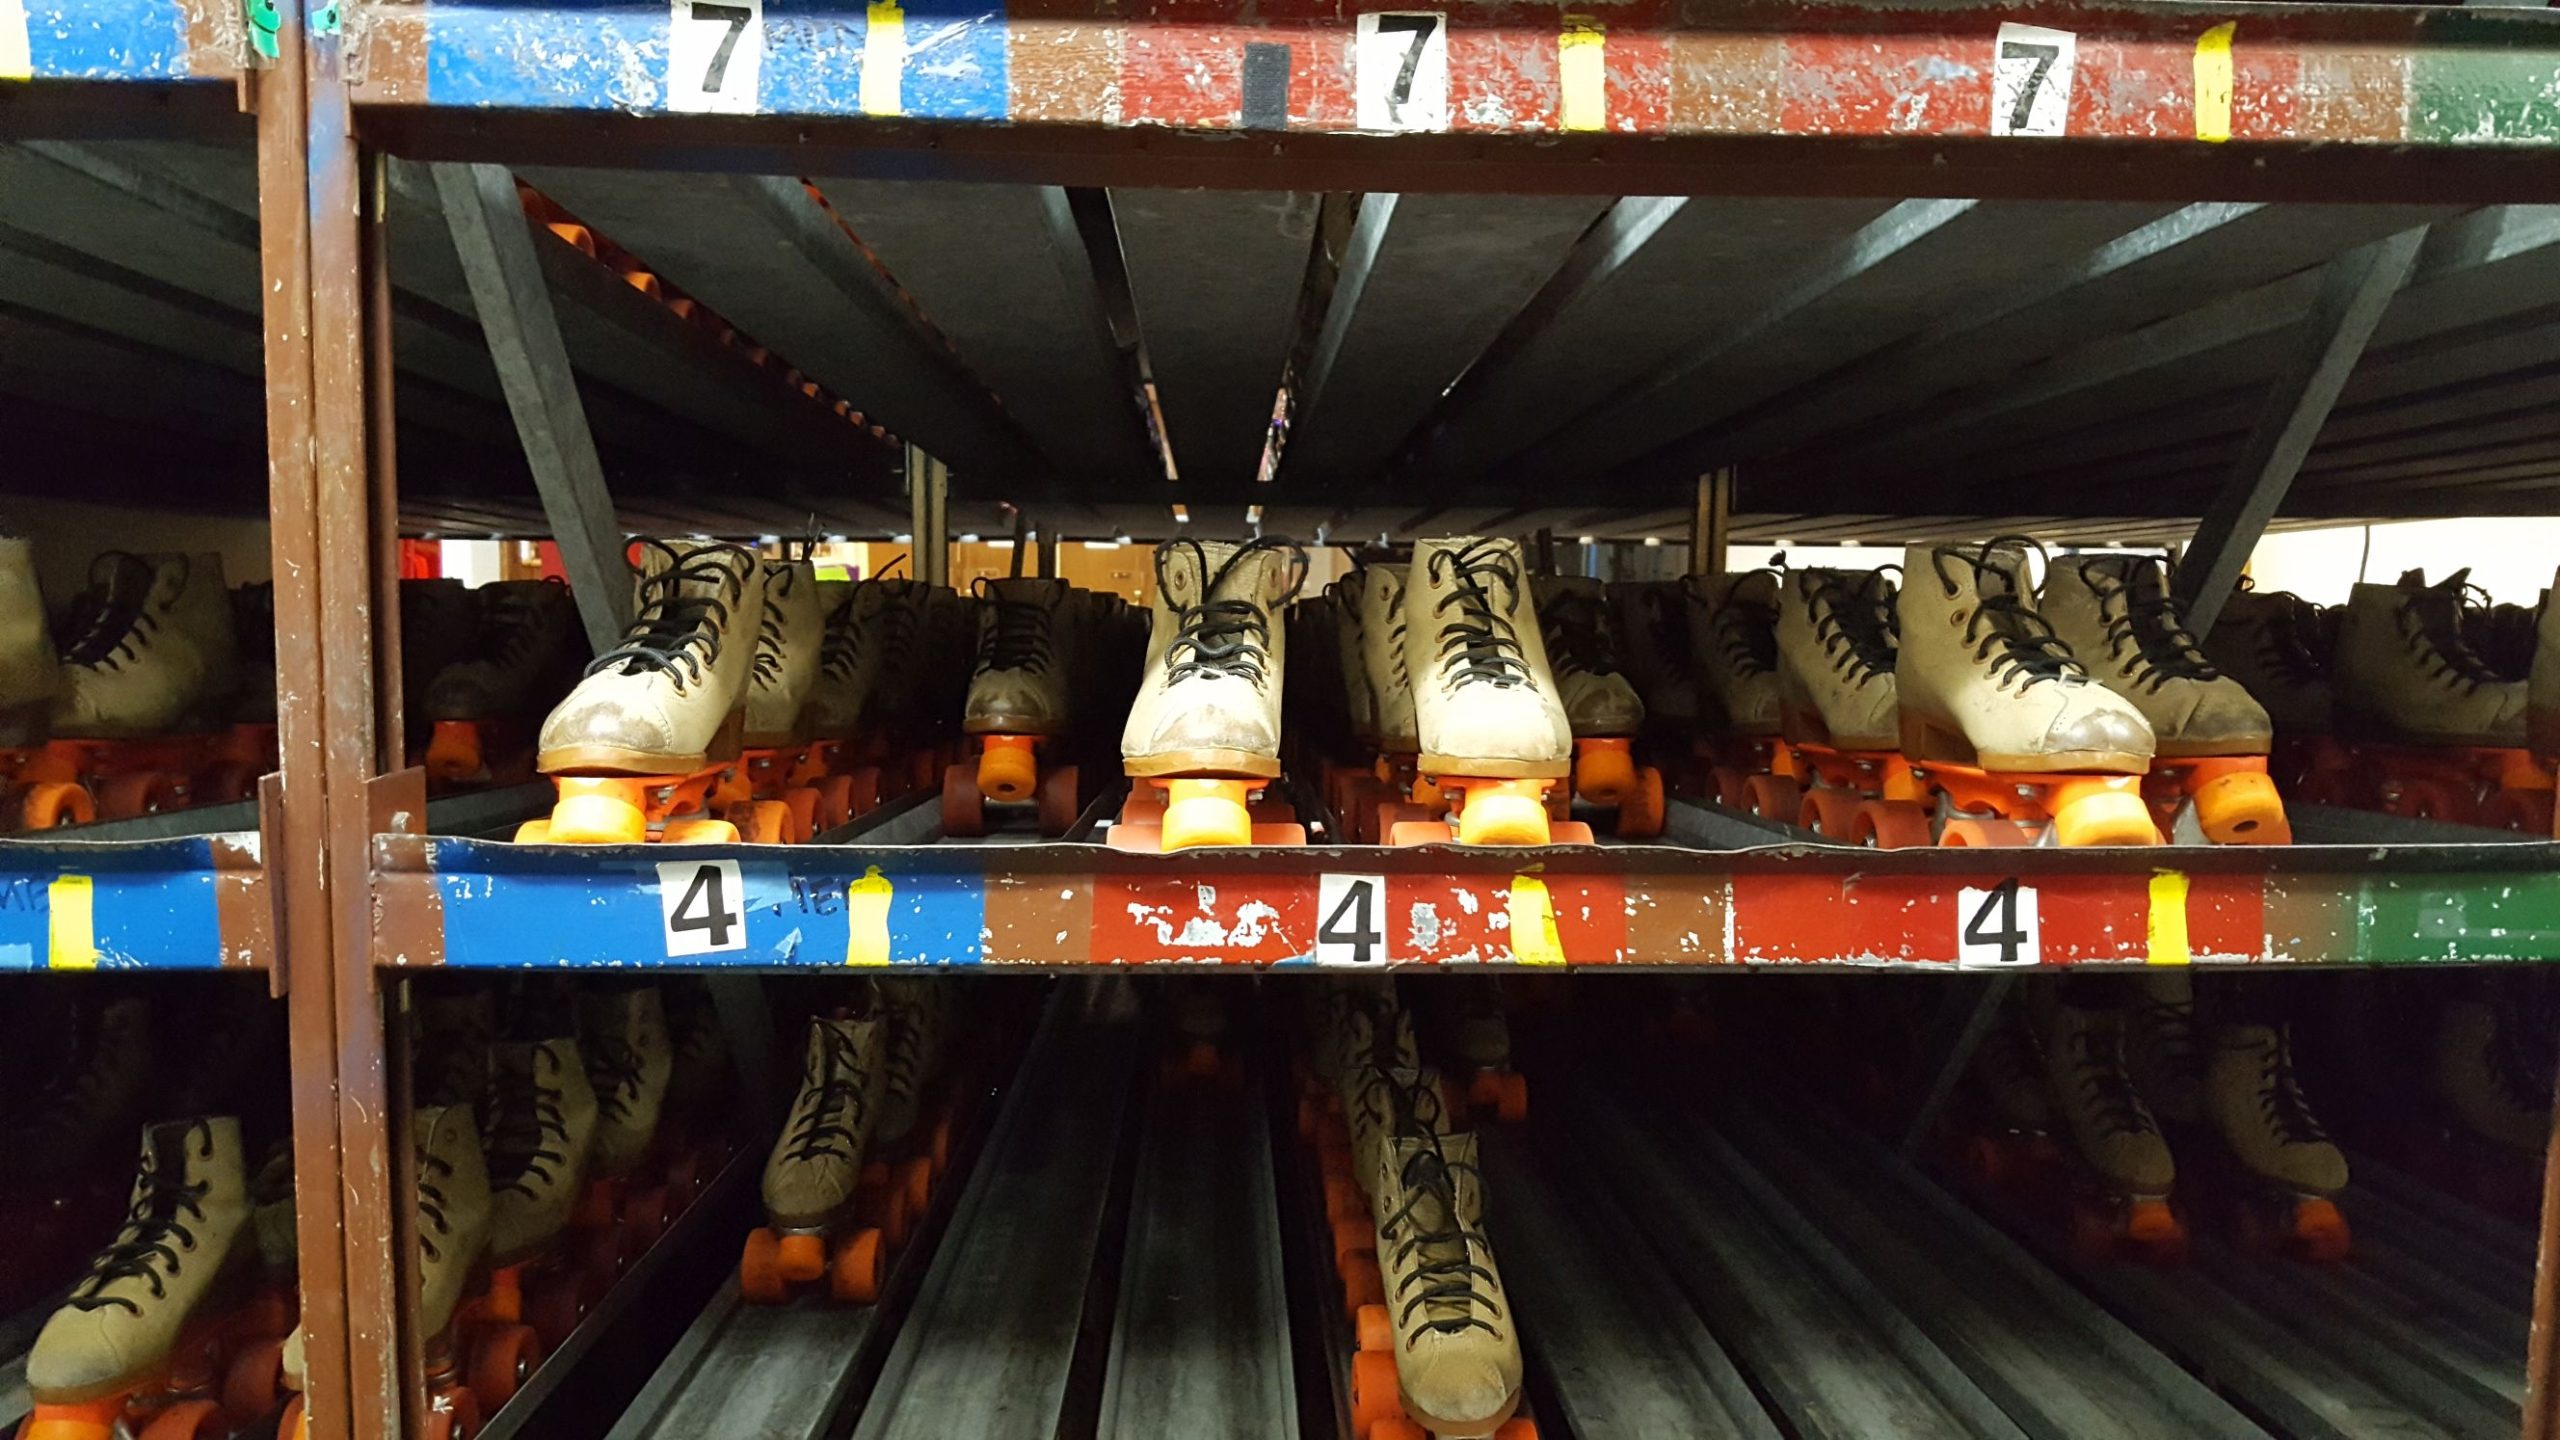 Rental skates in a gravity storage rack